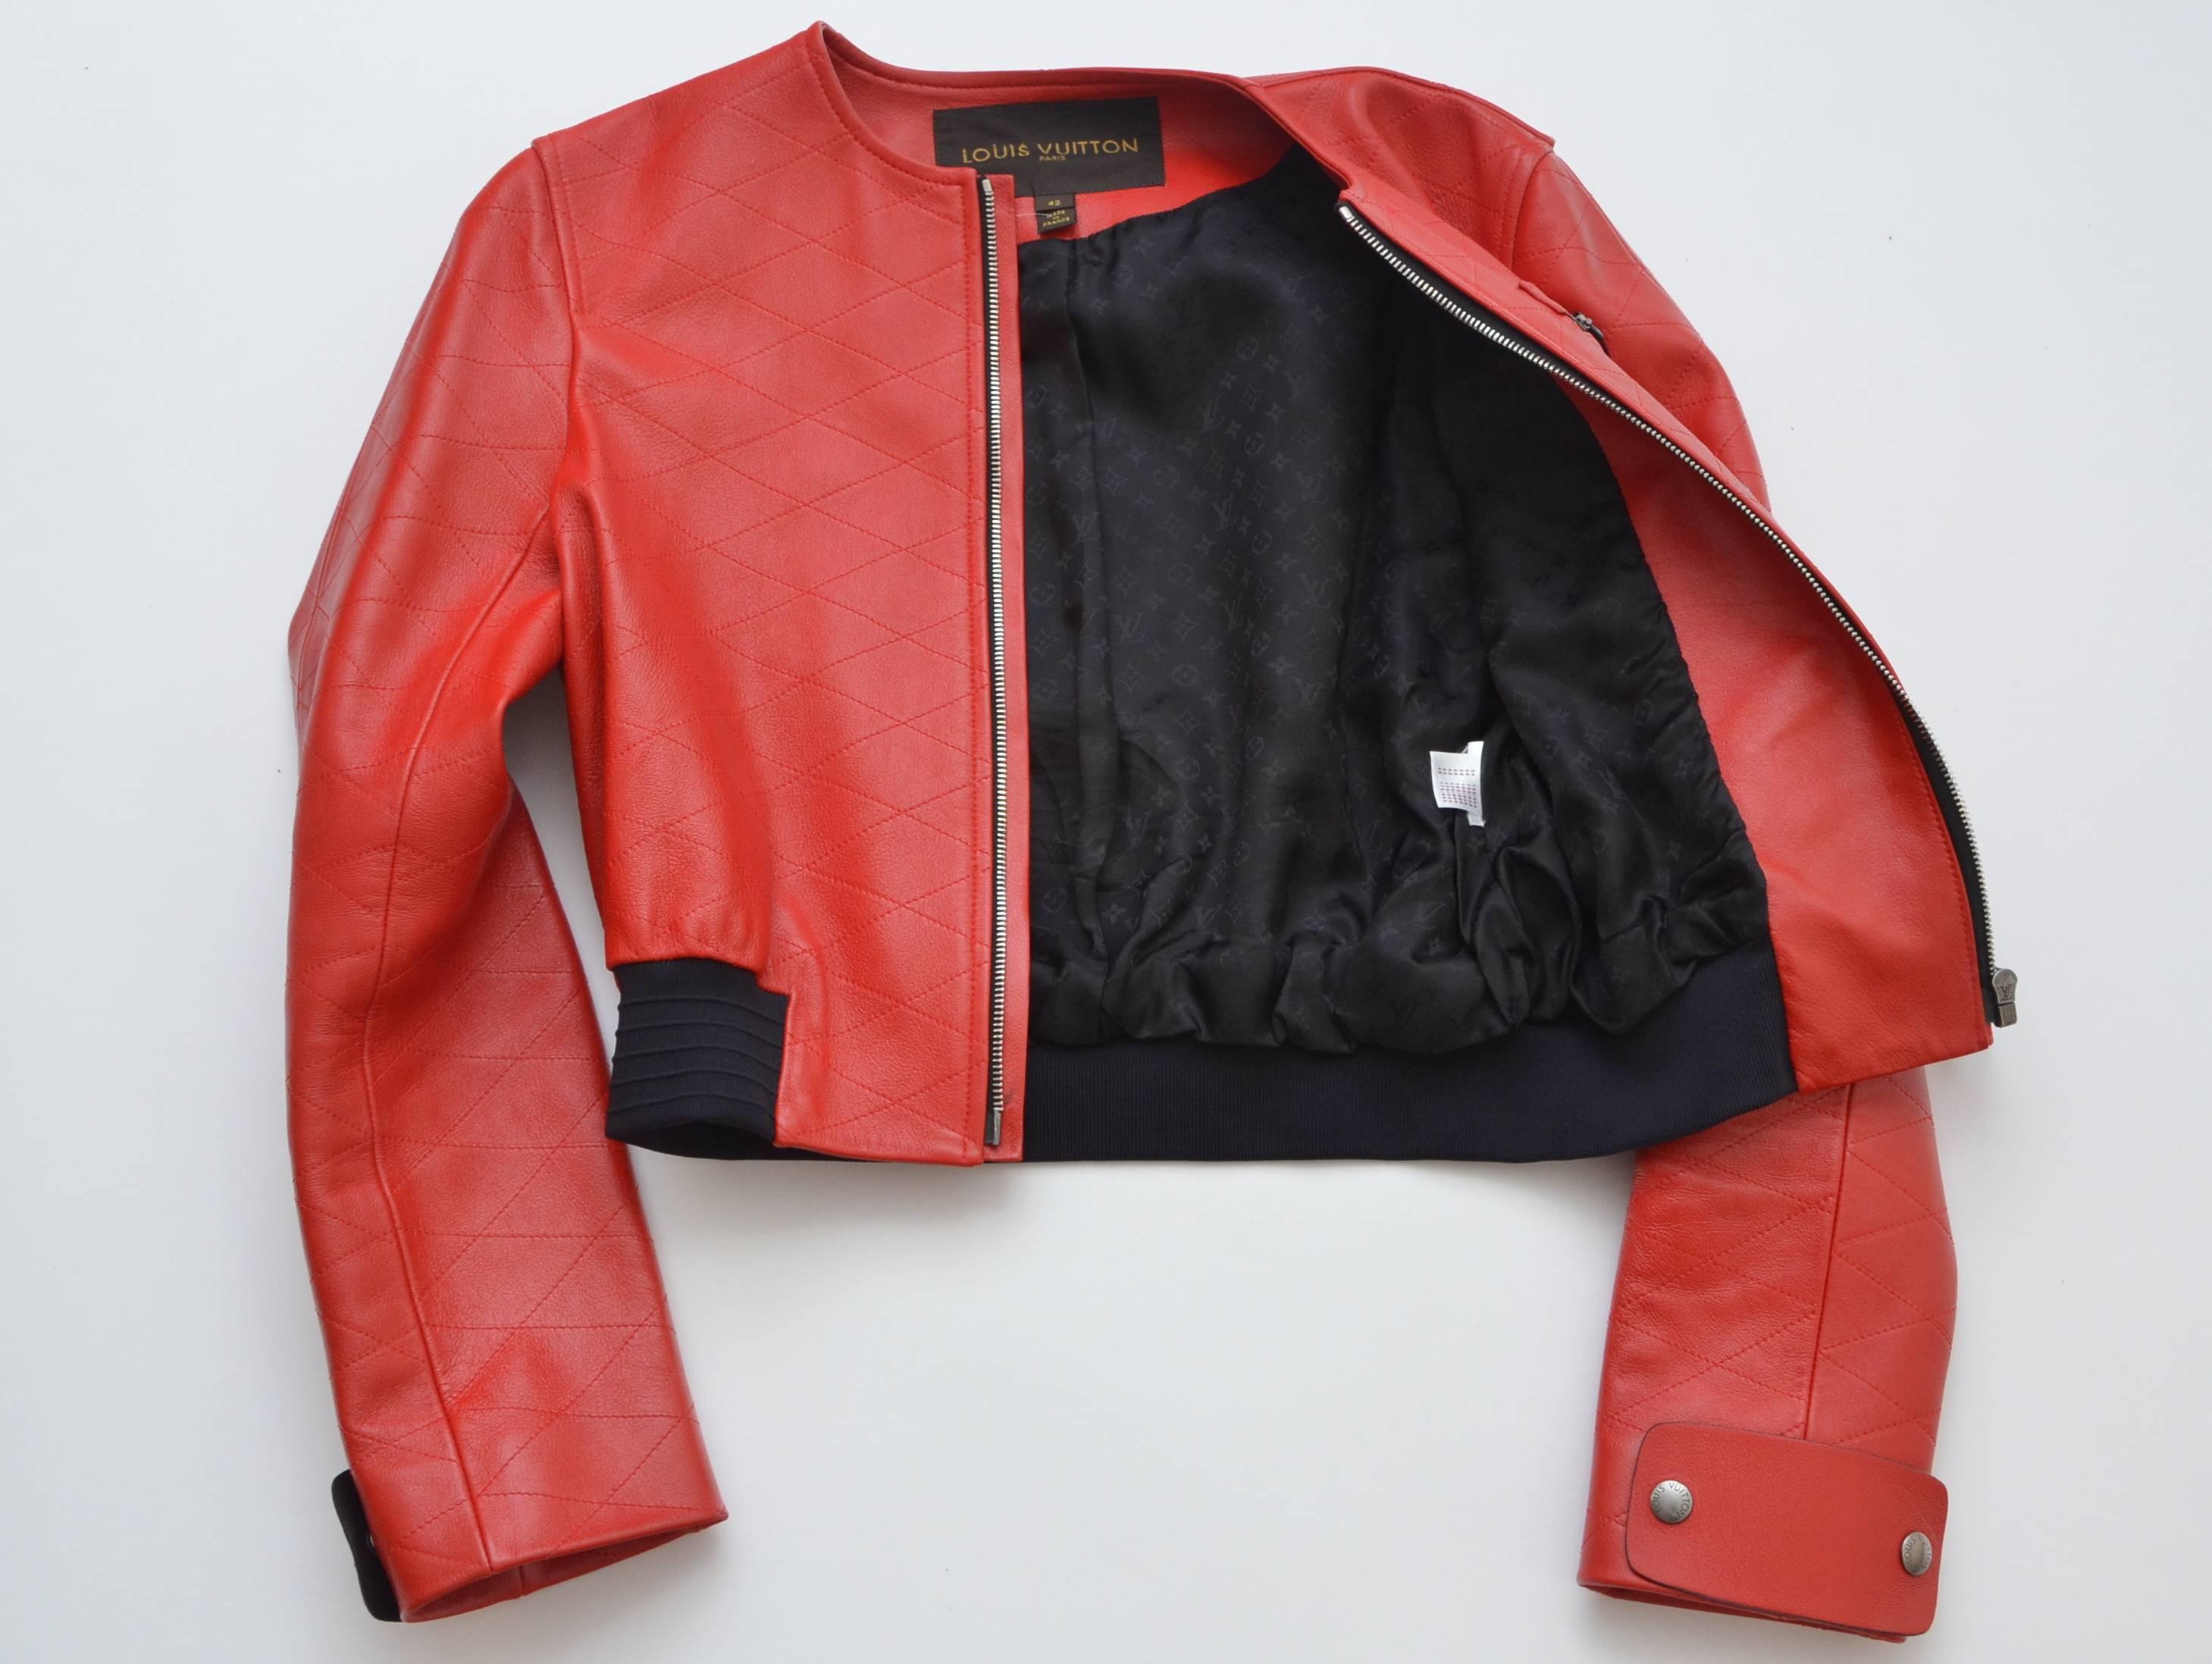 Louis Vuitton 2015 Nicolas G. Gesteppte Rote Lederjacke gesehen an Nicki Minaj für Damen oder Herren